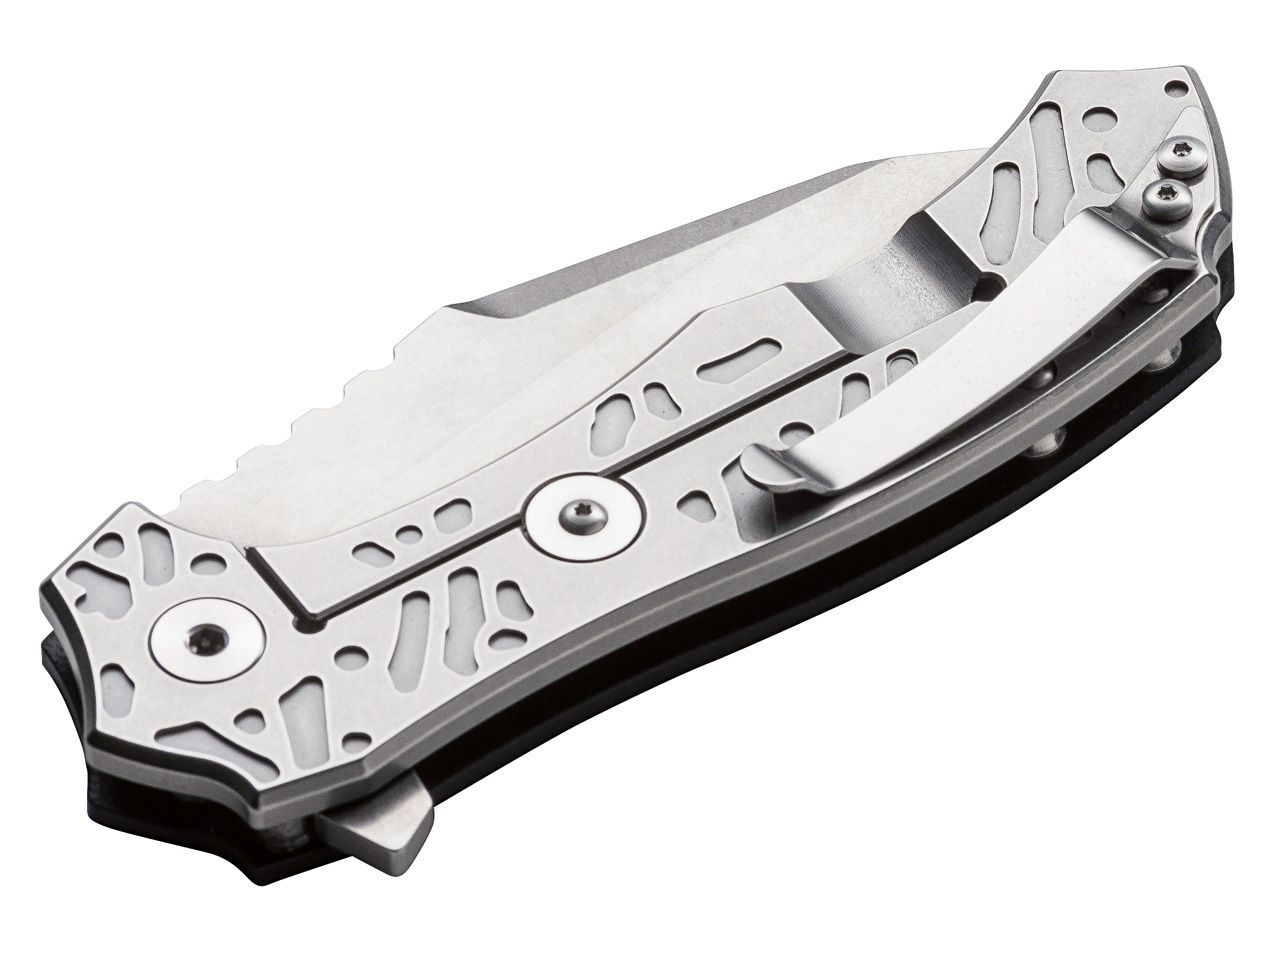 Нож складной CFM-A1 - Boker Plus 01BO766, сталь Sandvik™ 14C28N Stonewash, материал стеклотекстолит G10/нержавеющая сталь - фото 3